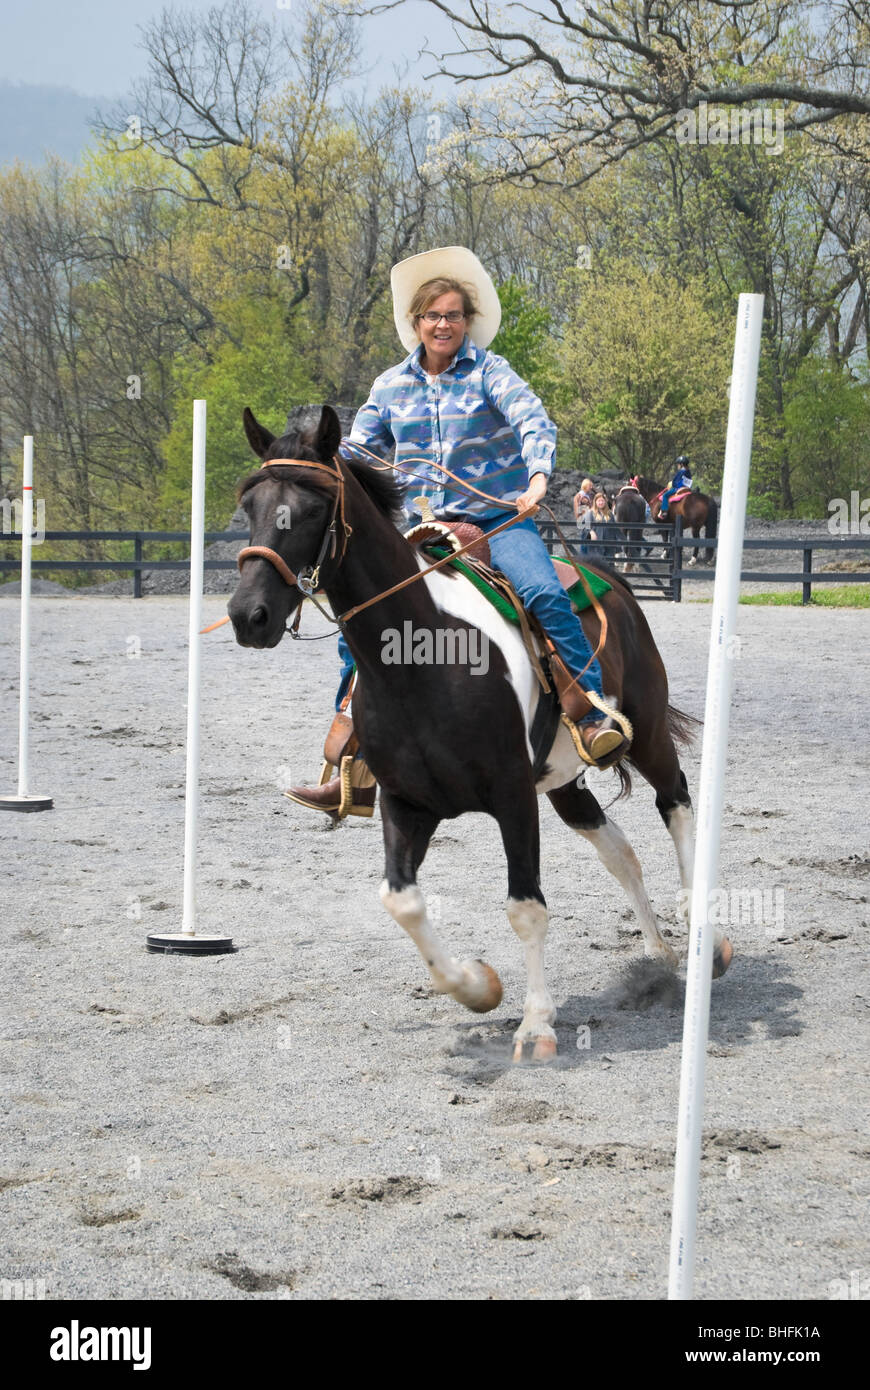 Happy rider s'amusant sur un cheval en passant par le pôle Fibres compétition à un spectacle événement. Banque D'Images